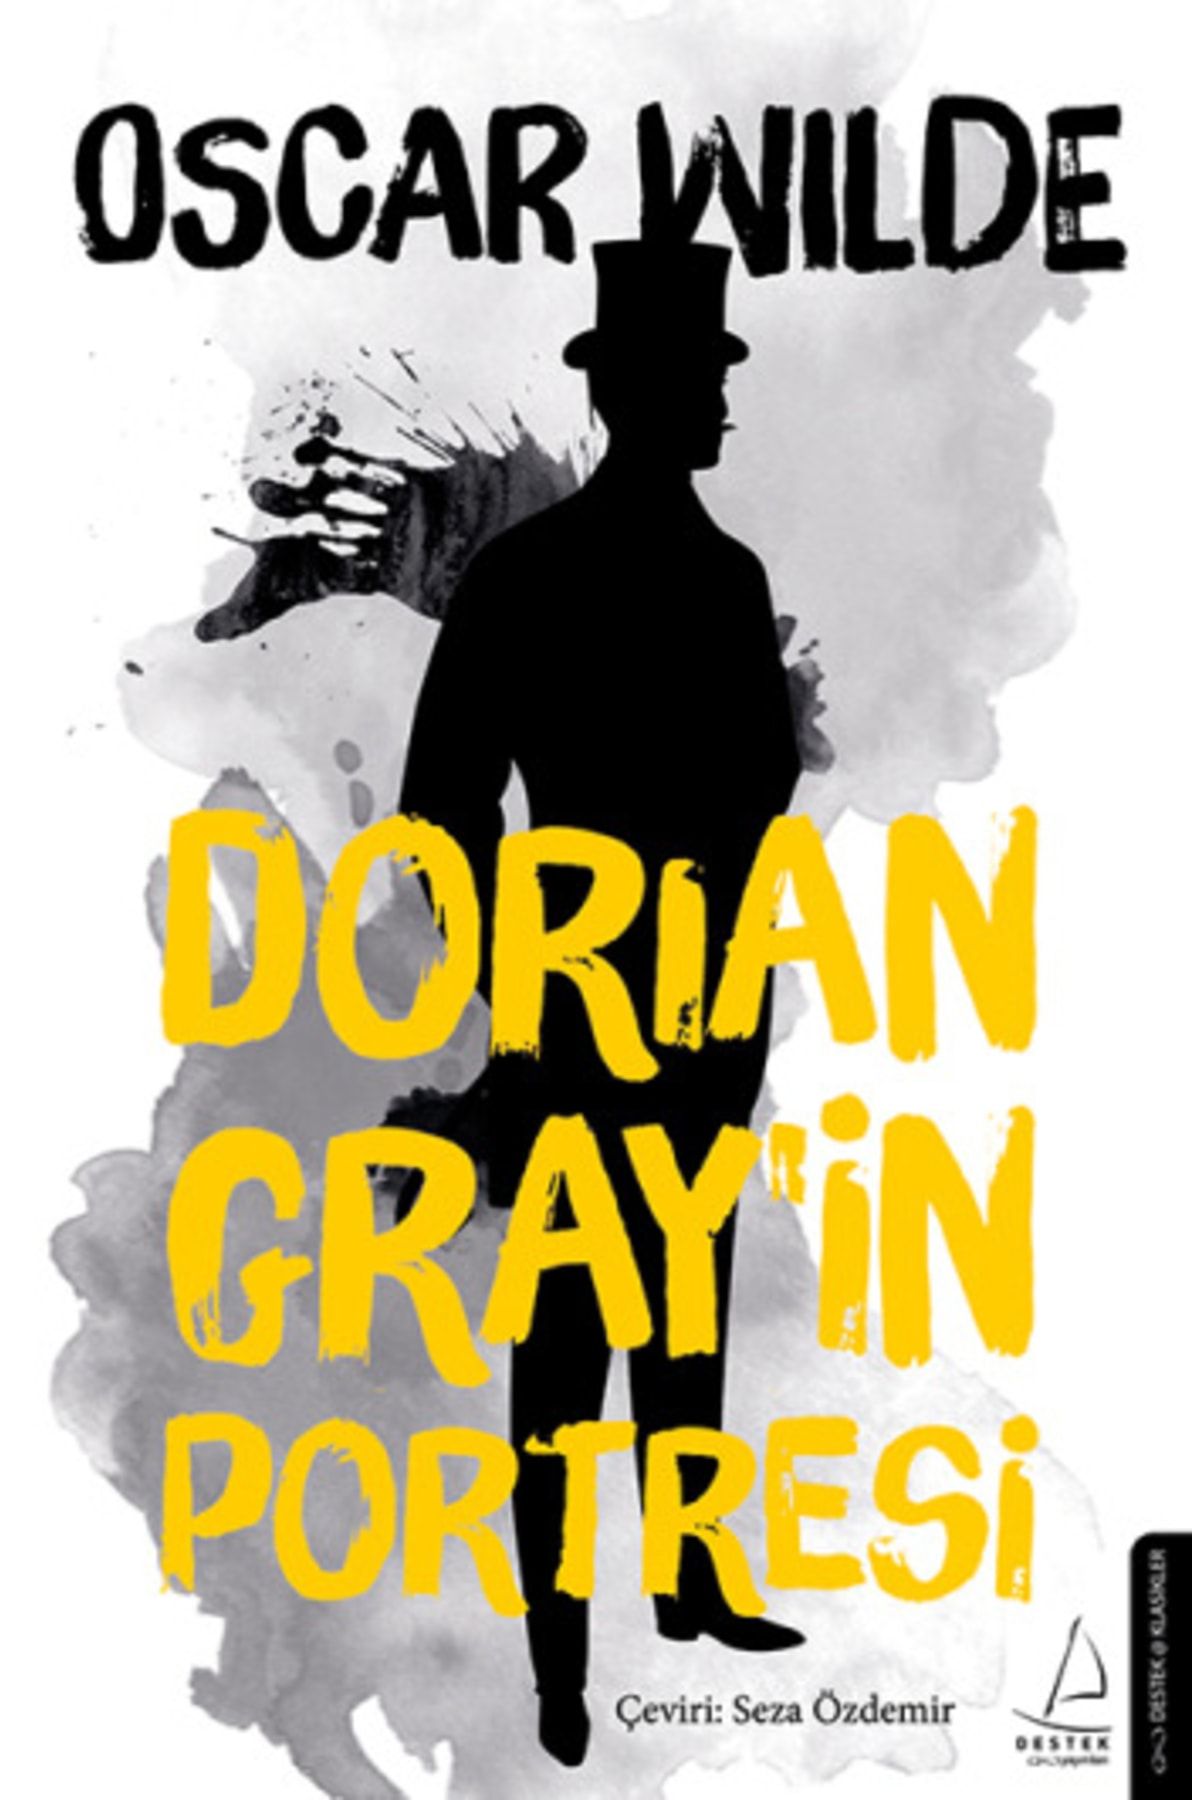 Destek Yayınları Dorian Gray'in Portresi